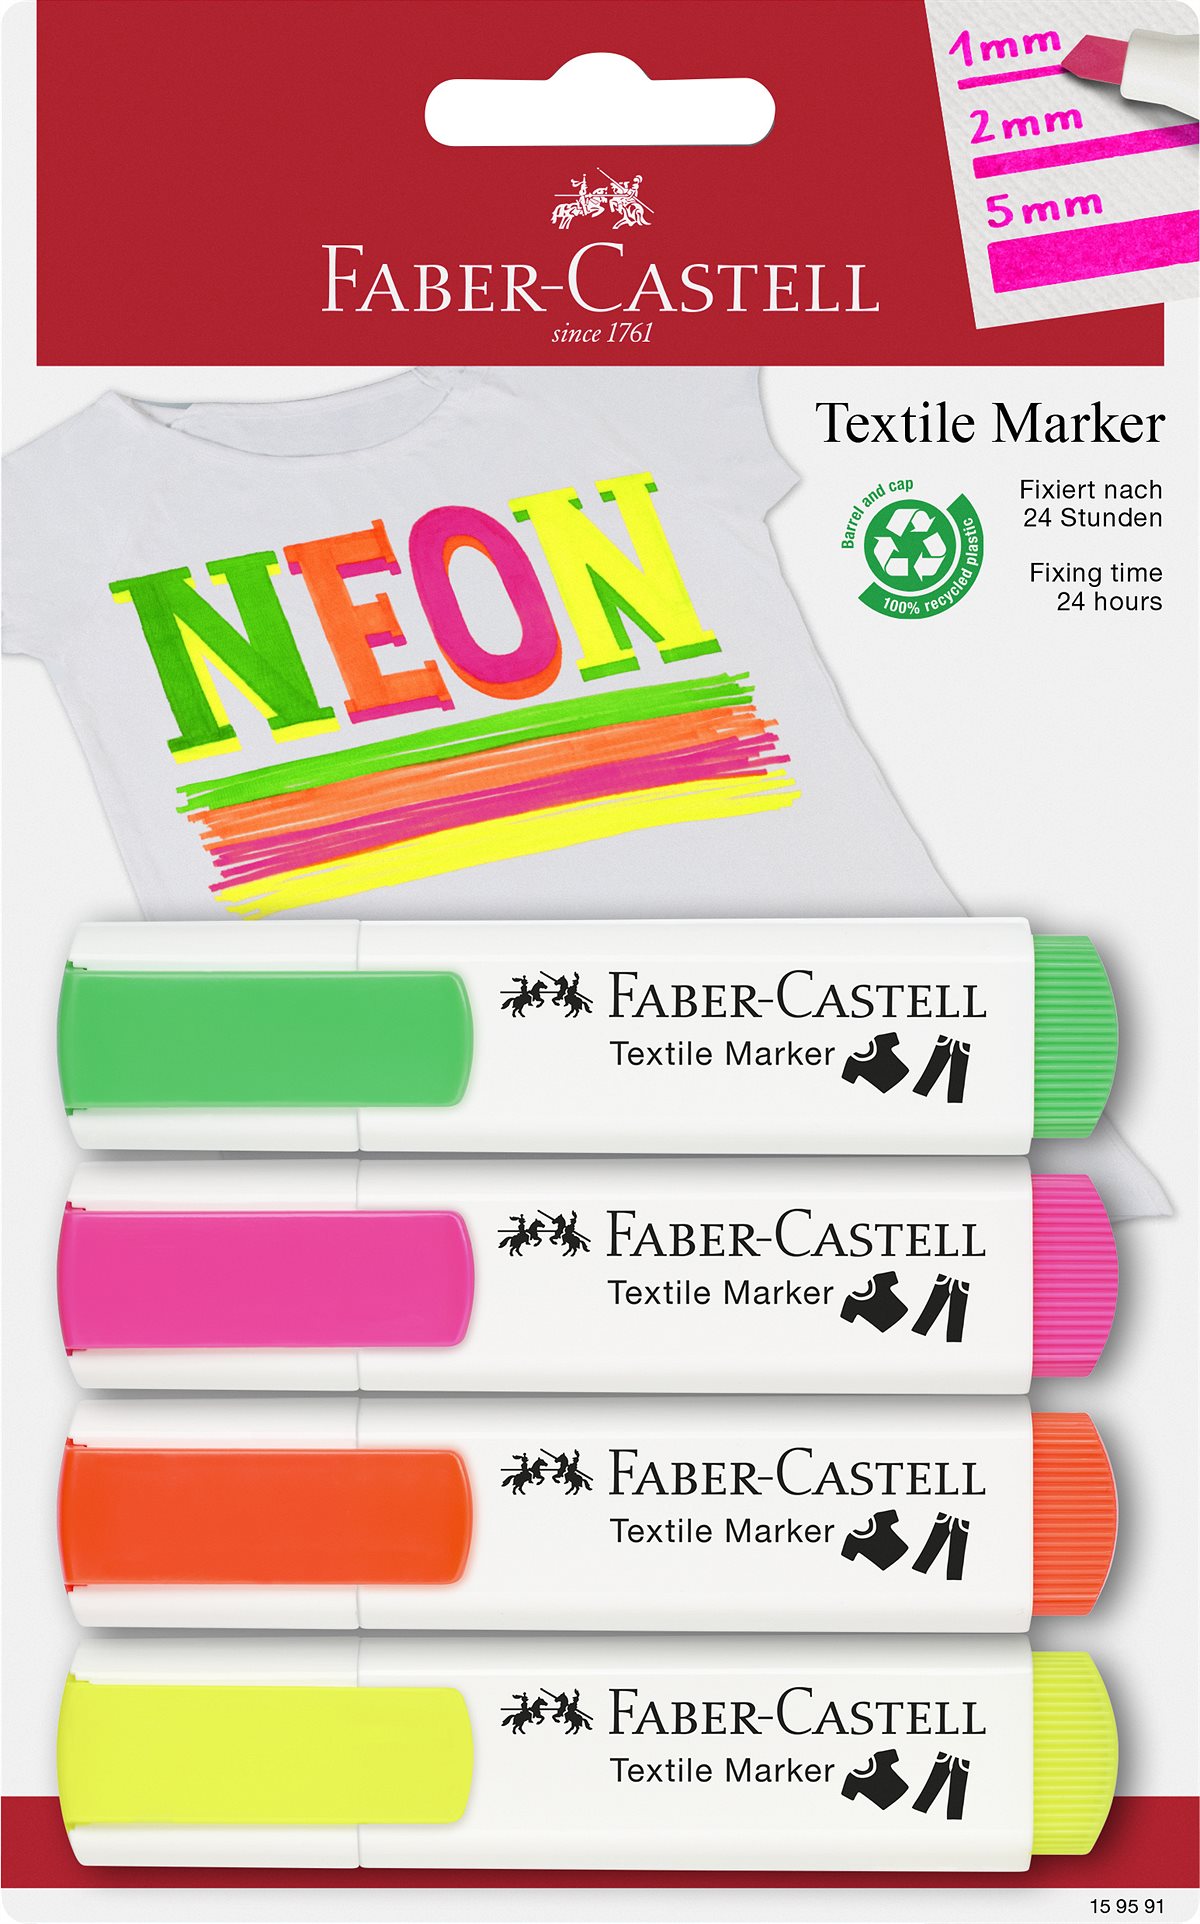 Faber-Castell_Textile markers_EUR 1,50 per Stück